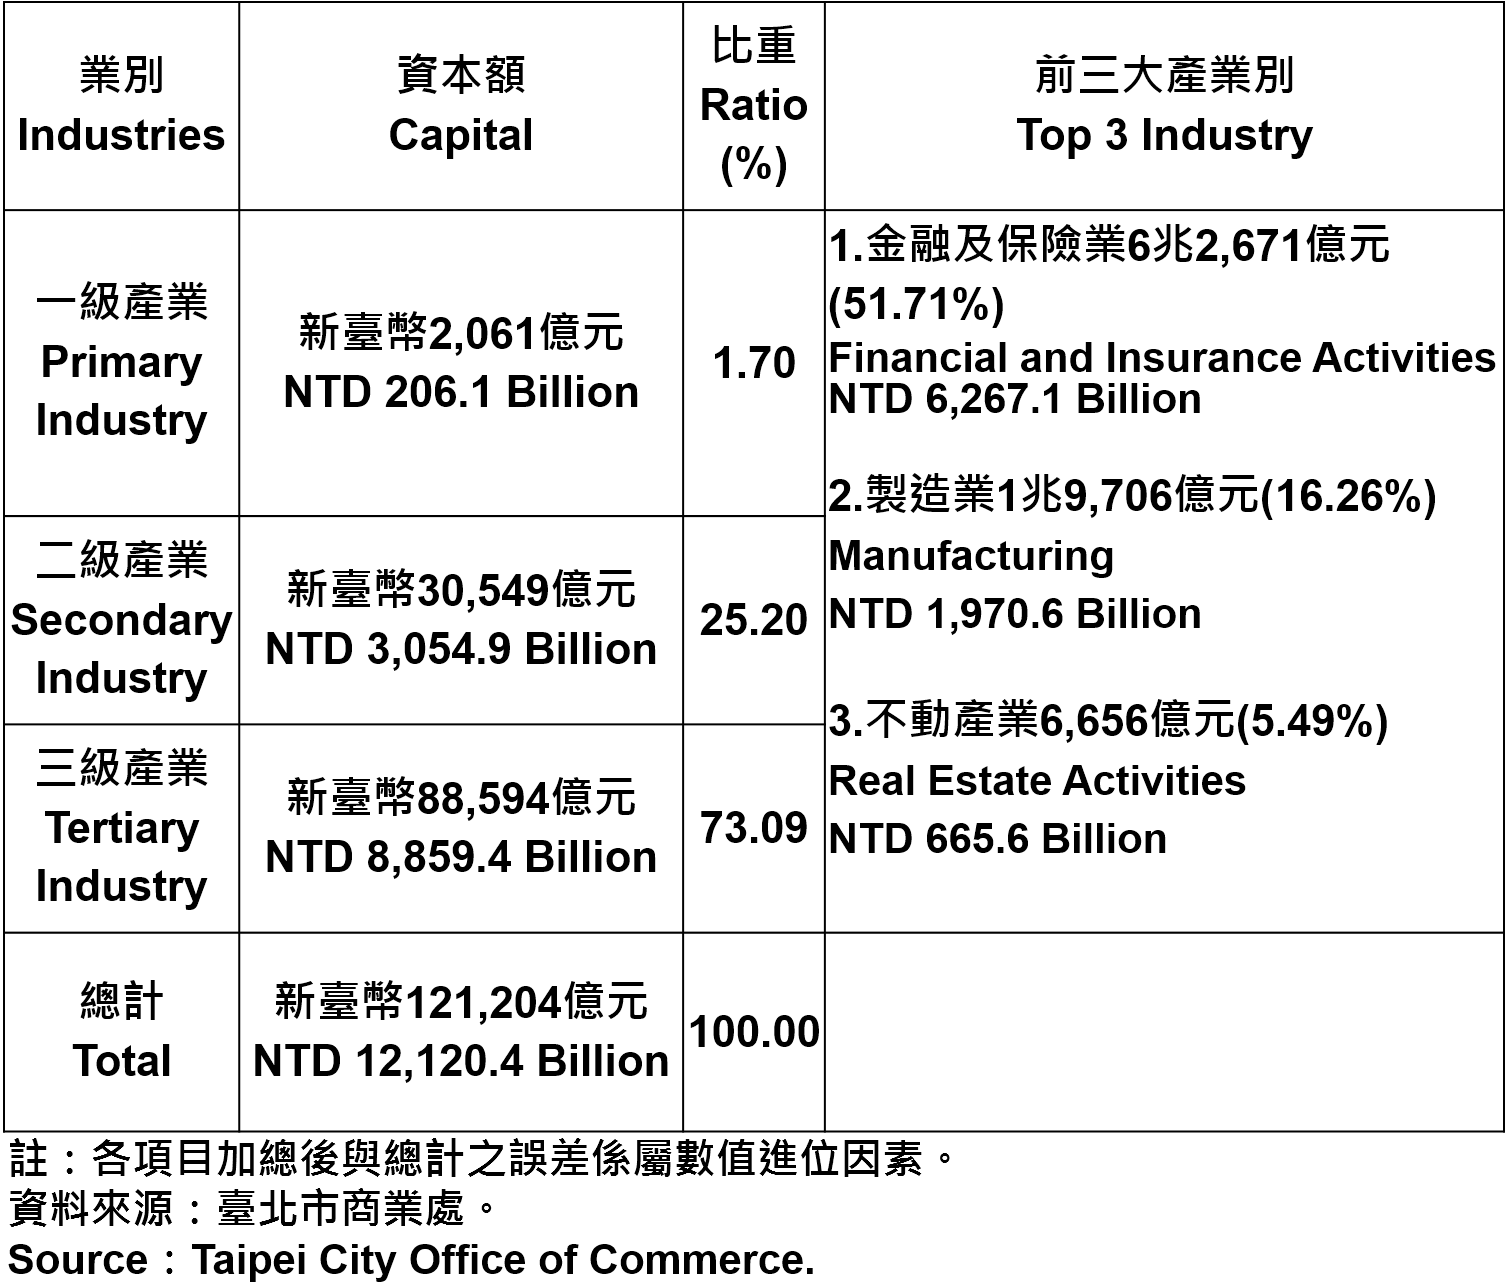 臺北市登記之公司資本總額—2018Q2 Capital for the Companies and Firms Registered in Taipei City—2018Q2